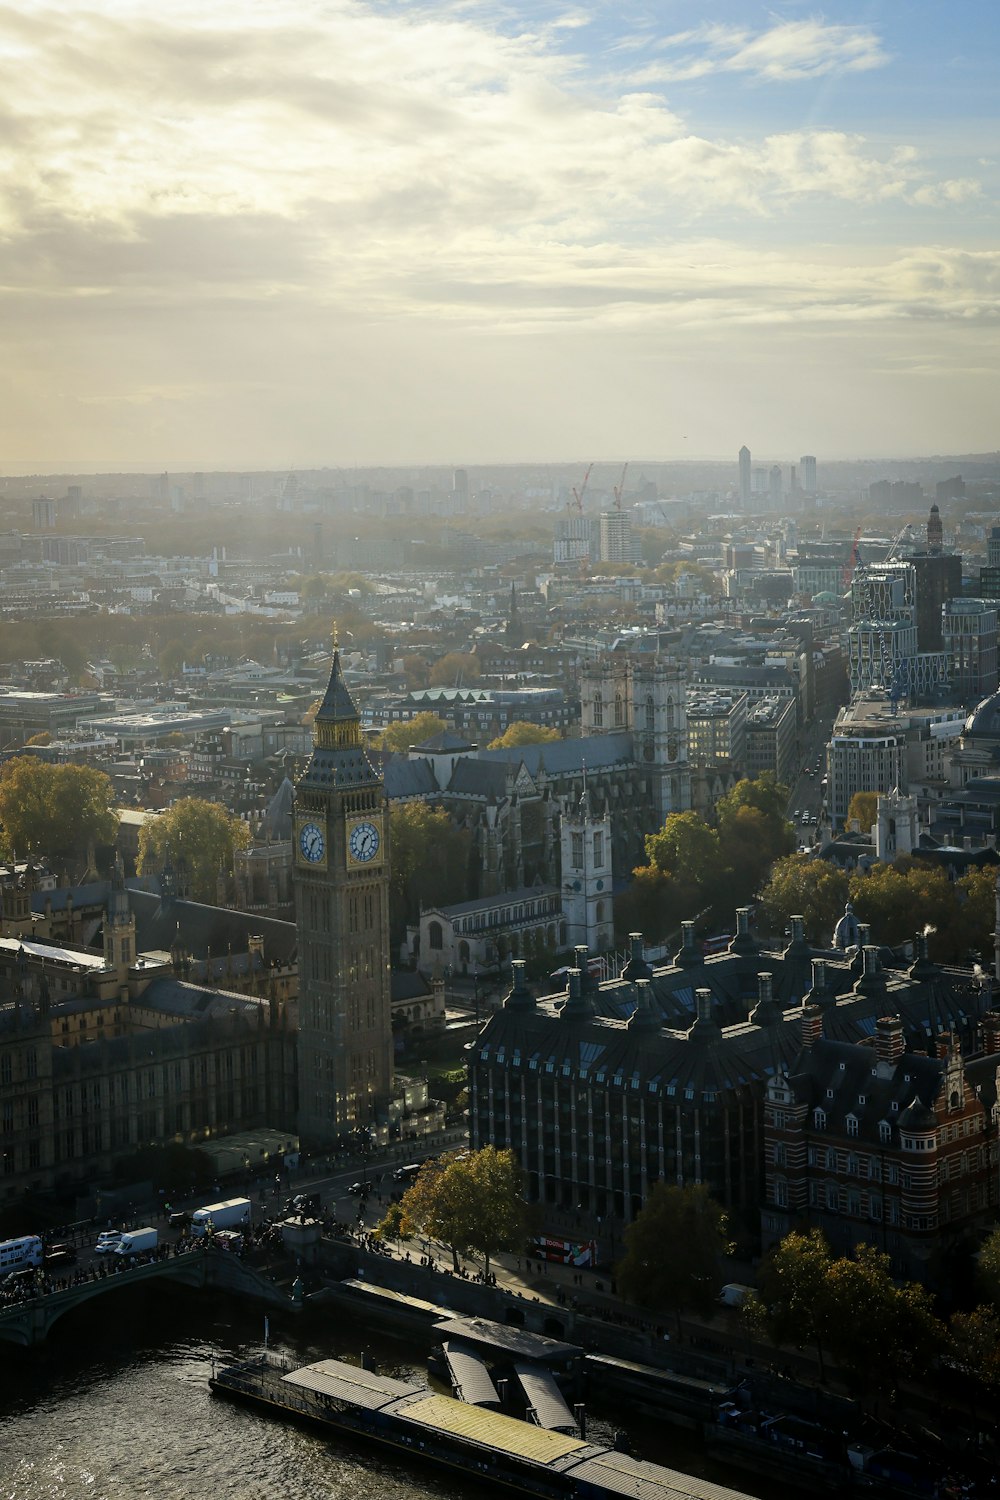 Una vista de la ciudad de Londres desde lo alto de una torre